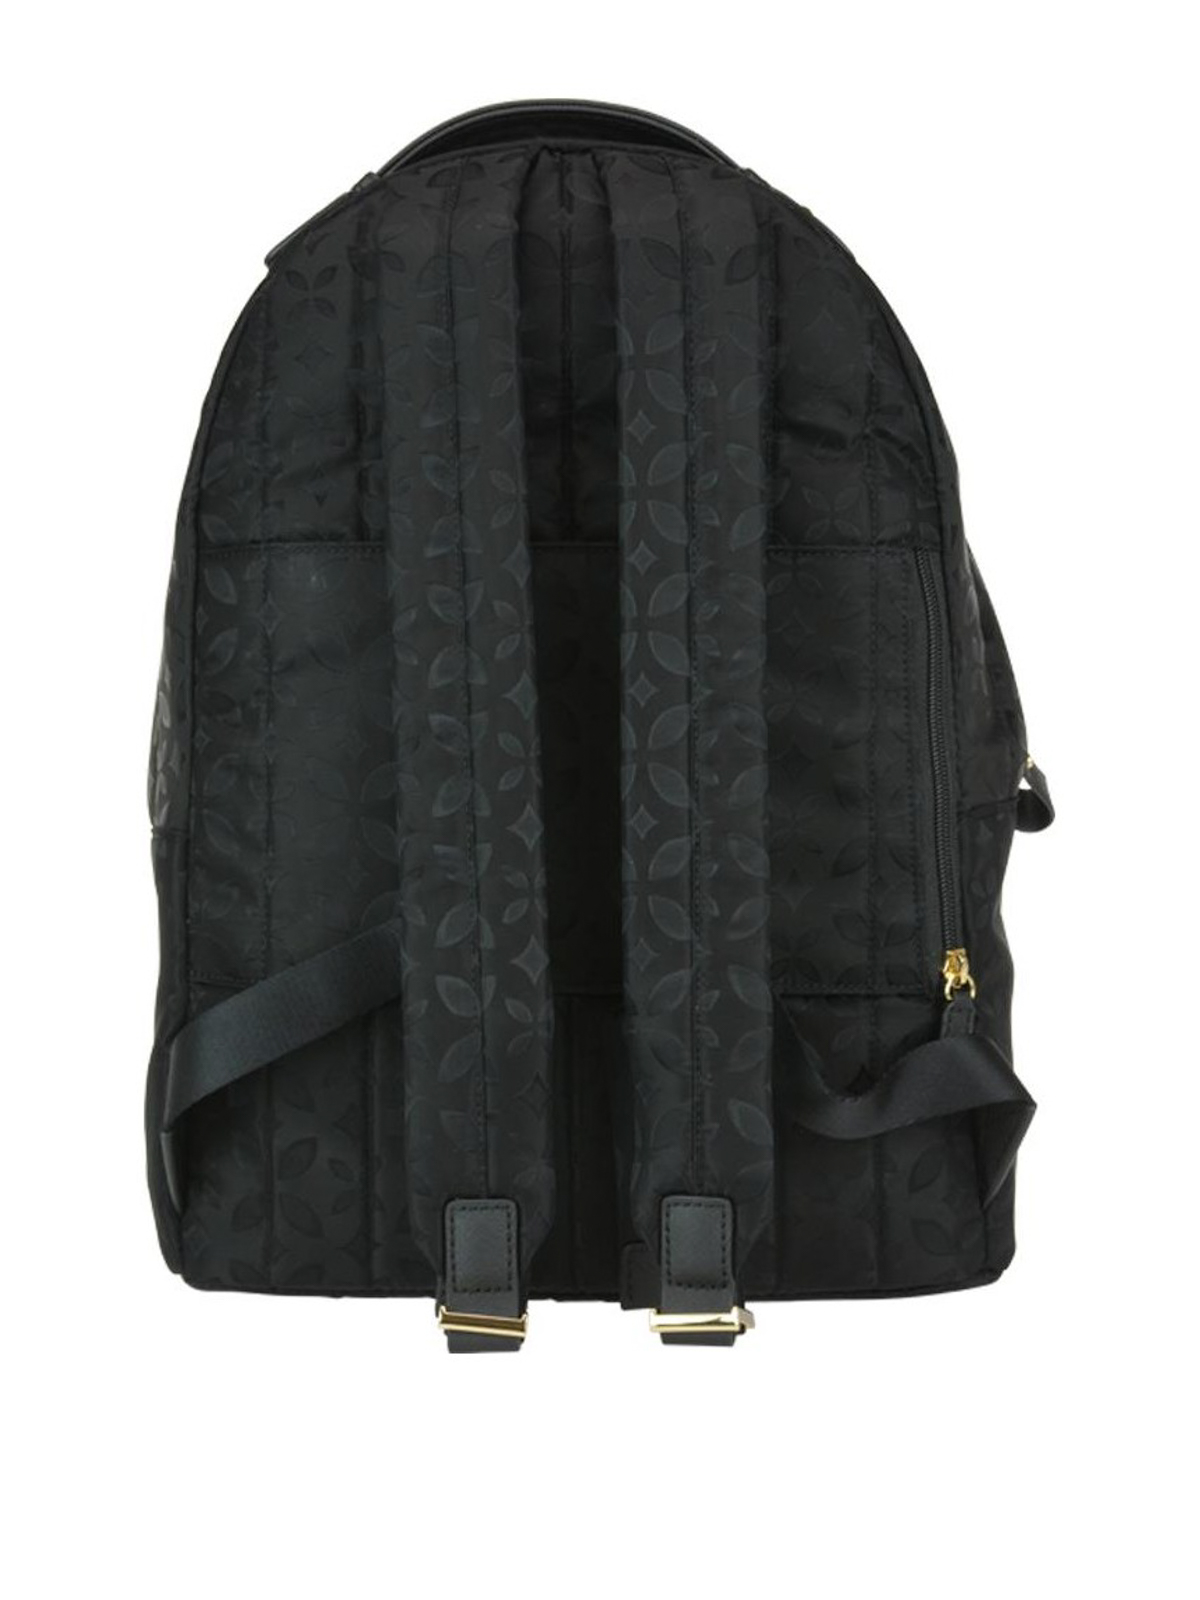 Dronning ønske international Backpacks Michael Kors - Kelsey black floral nylon large backpack -  30F8GO2B4J001